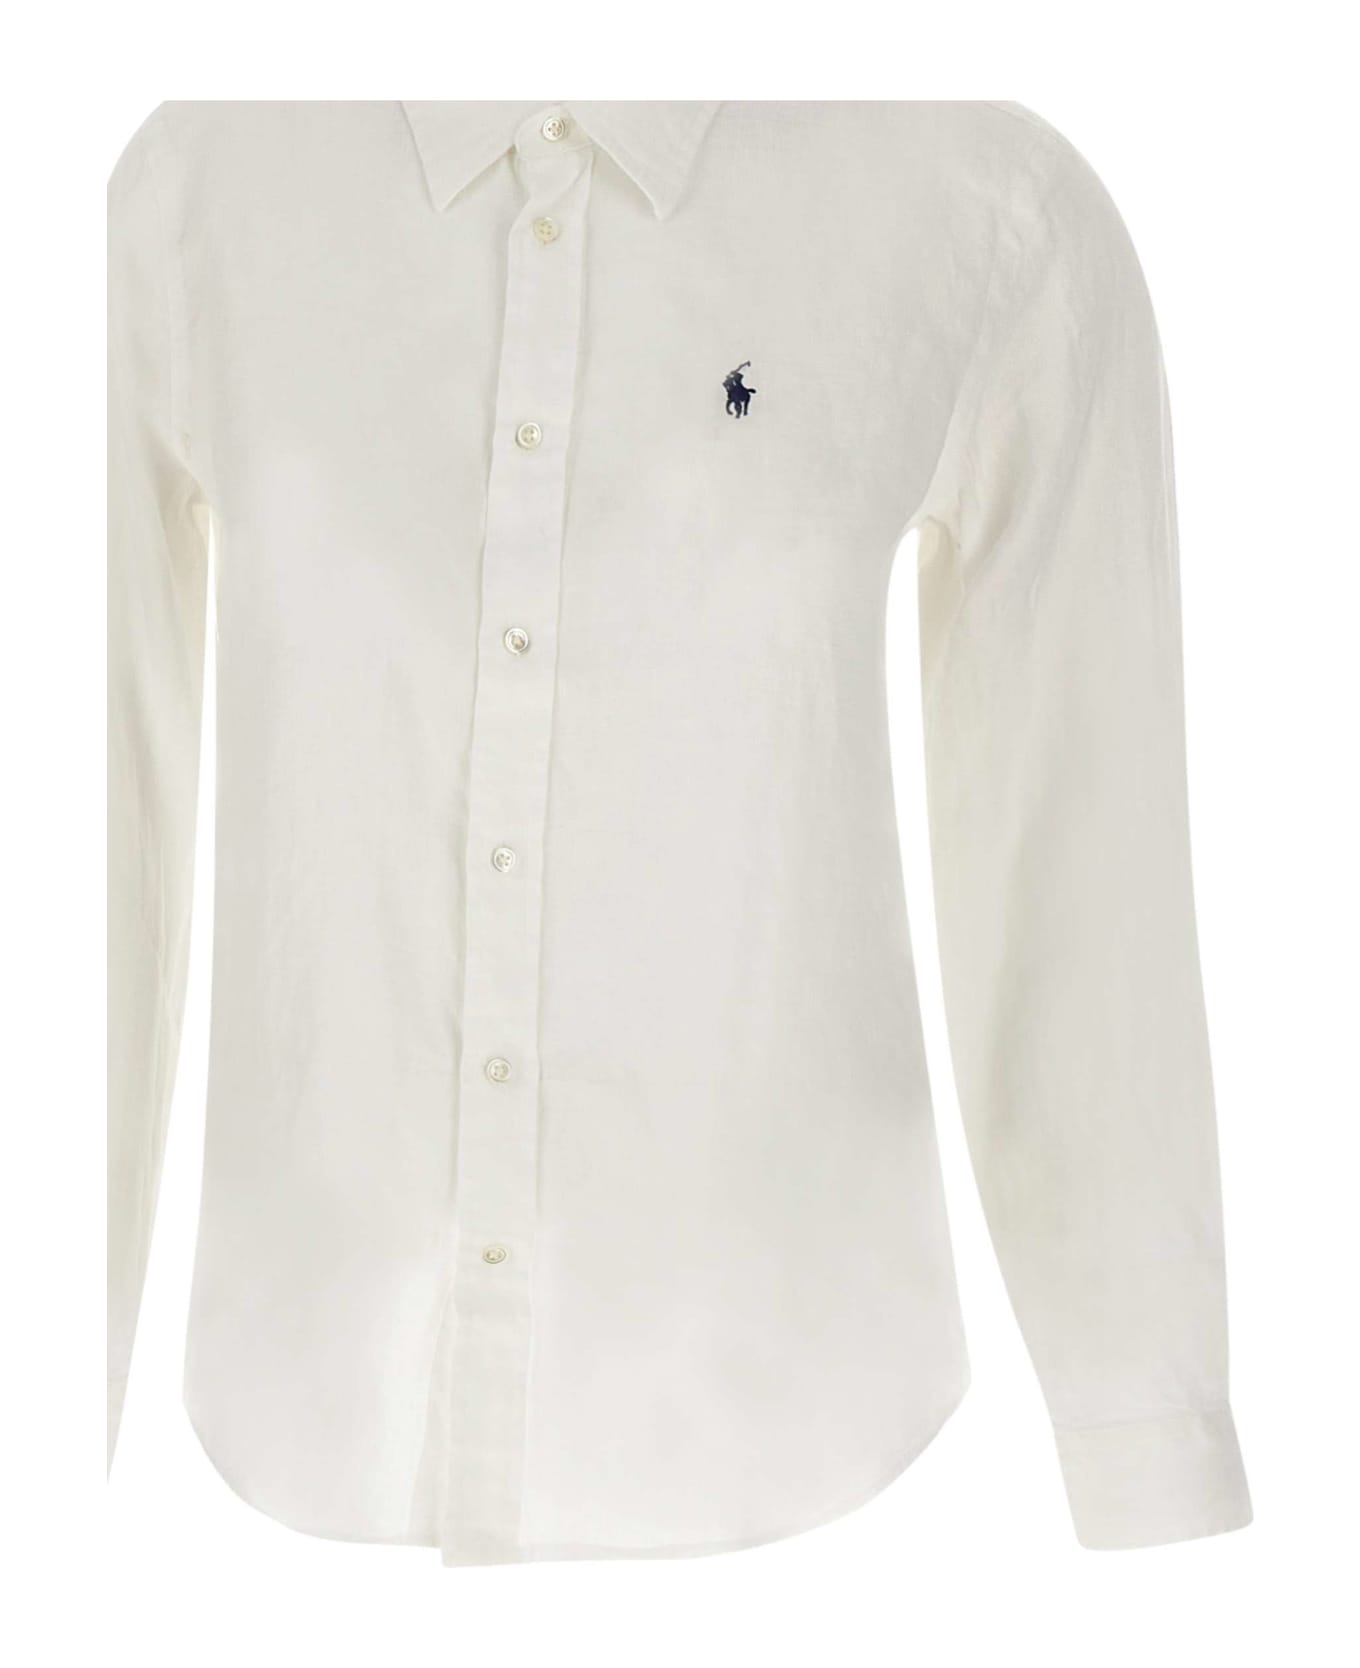 Ralph Lauren 'classic' Linen Shirt - White シャツ